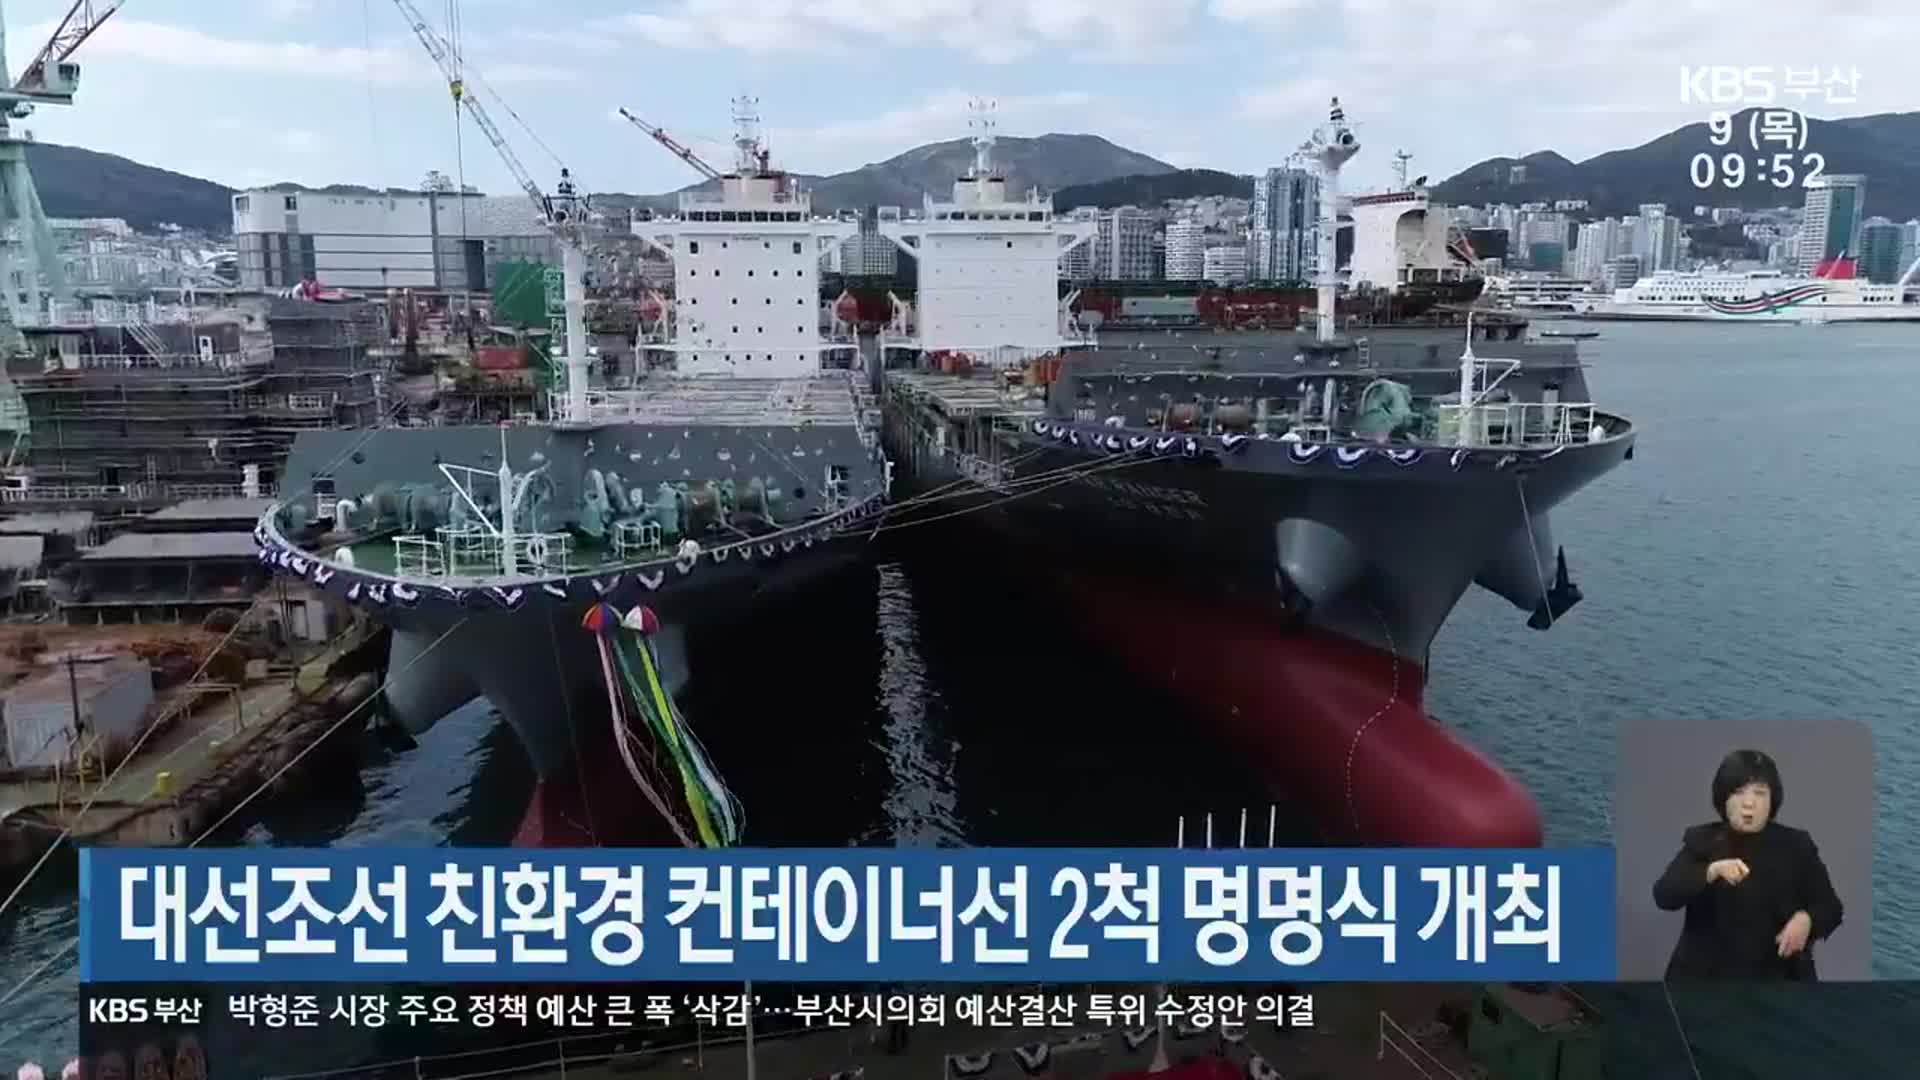 대선조선 친환경 컨테이너선 2척 명명식 개최